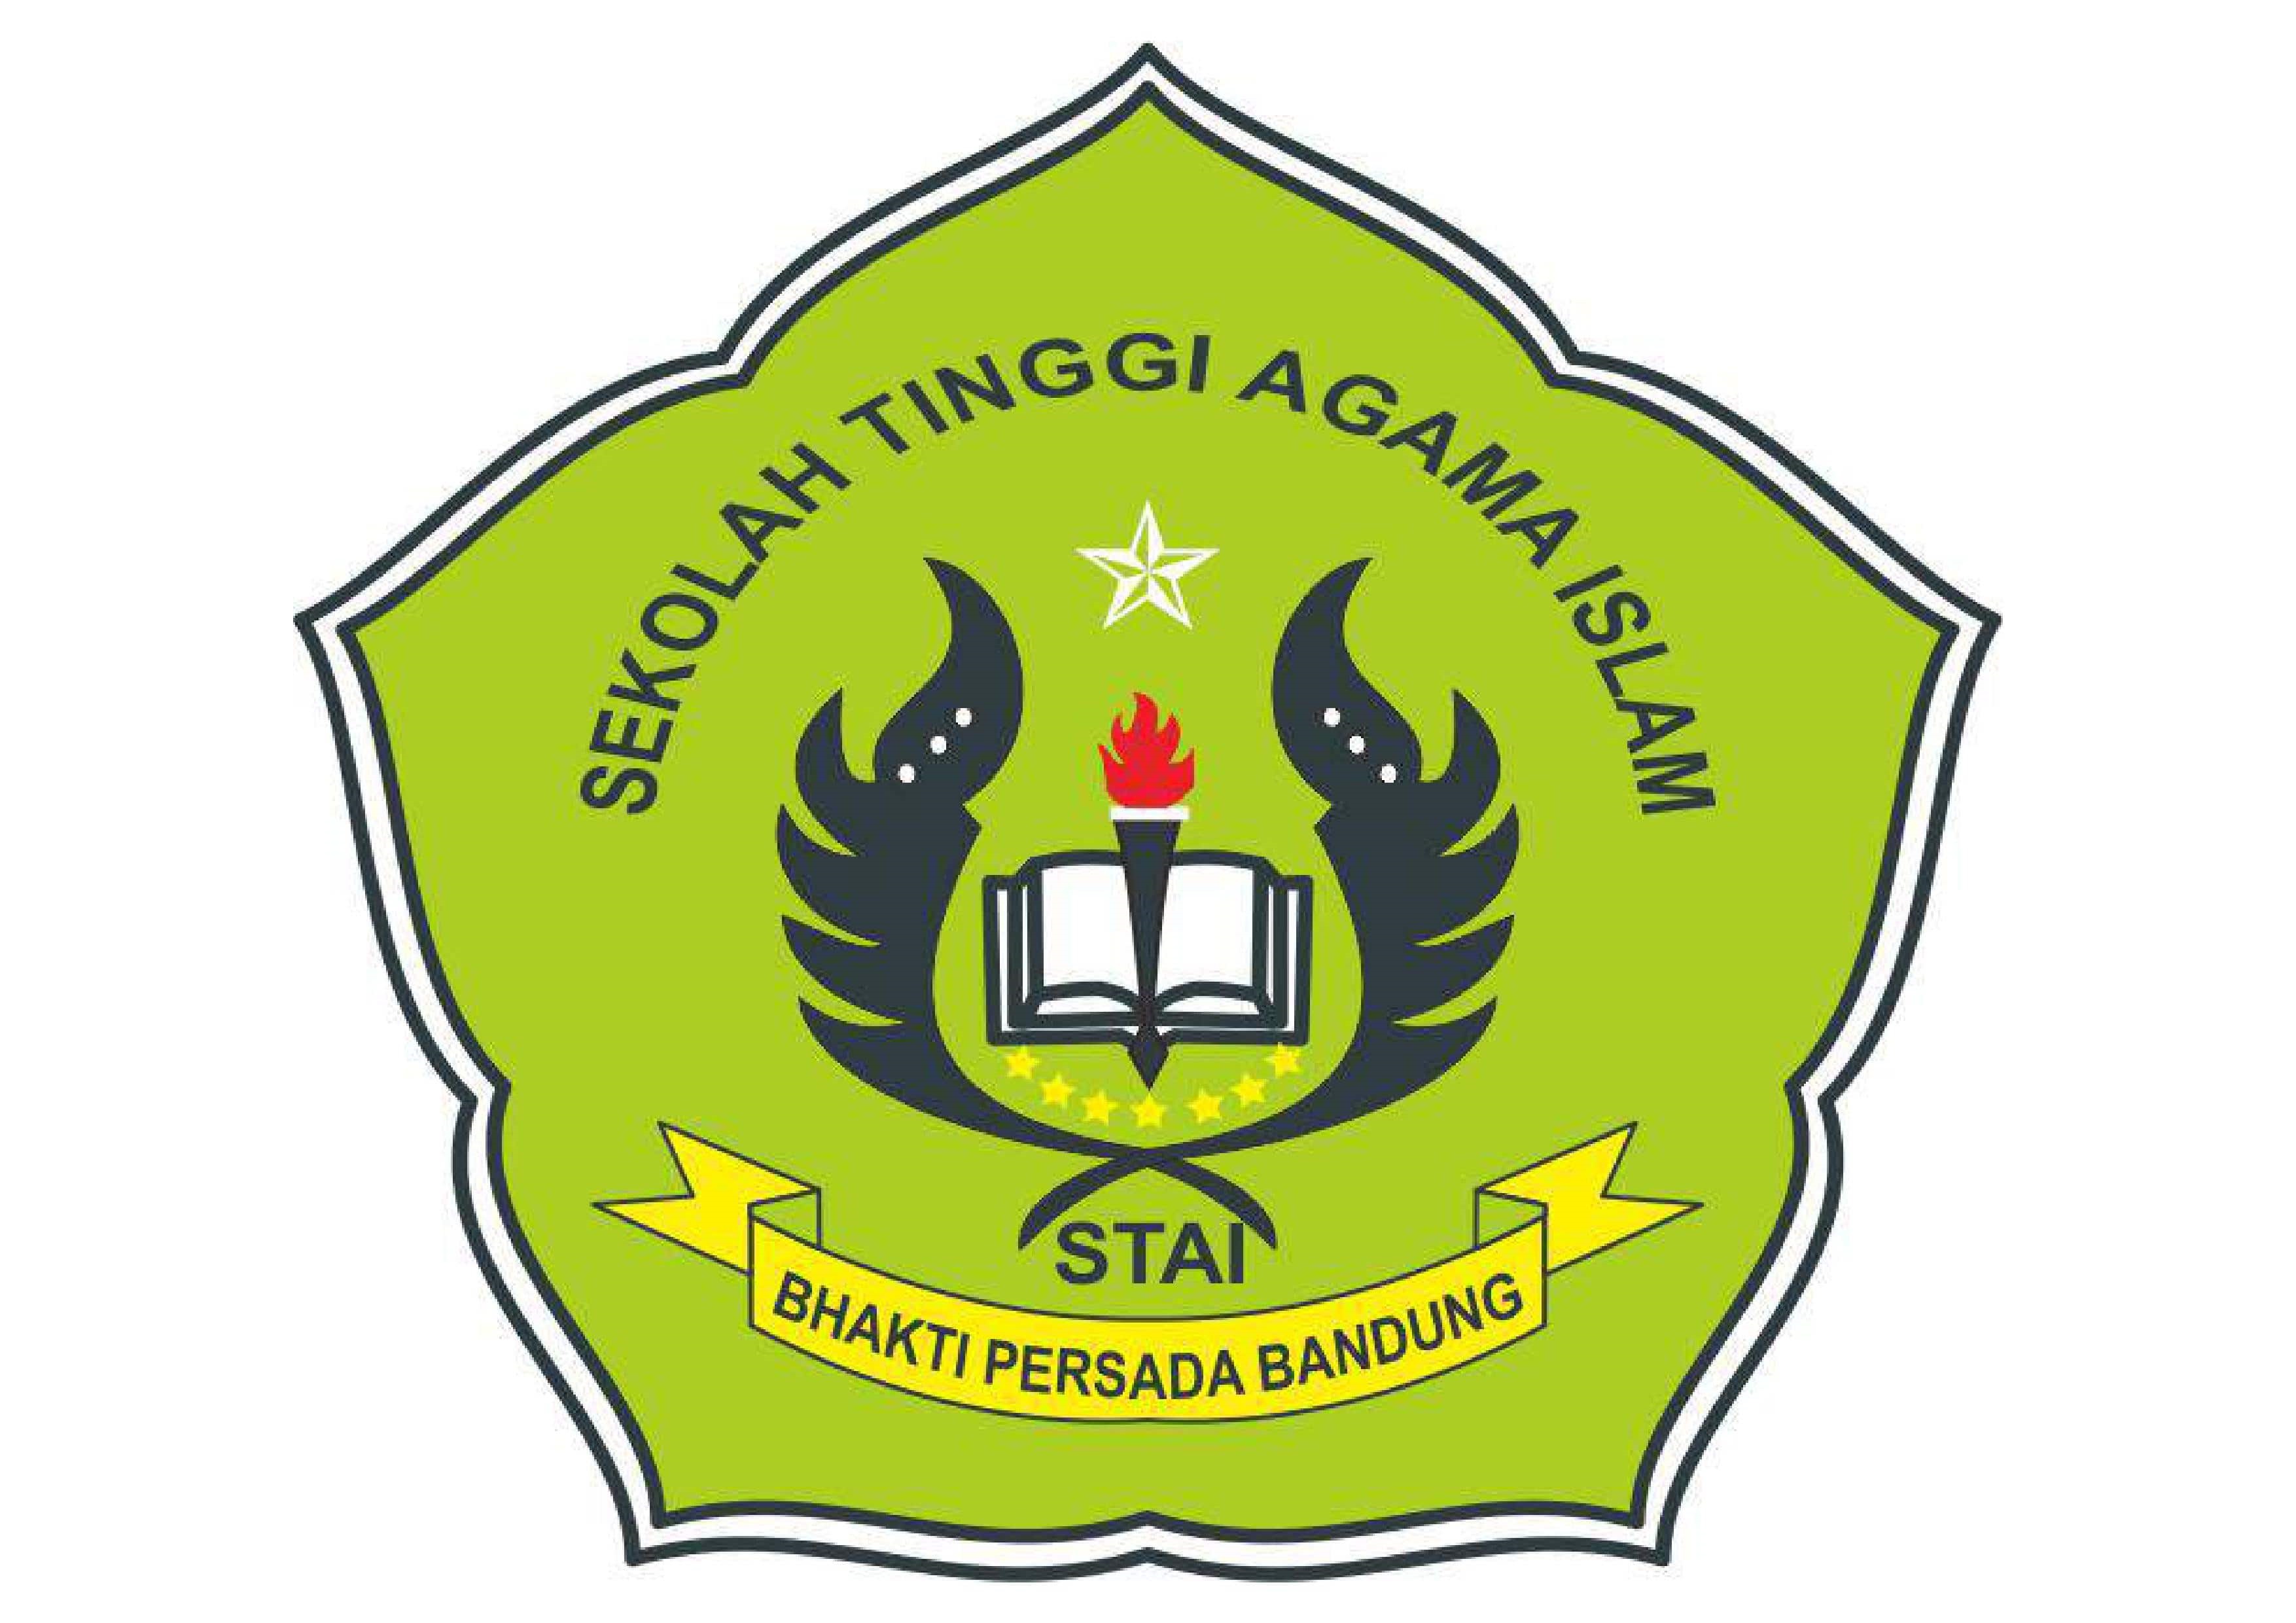 Sekolah Tinggi Agama Islam Bhakti Persada Bandung